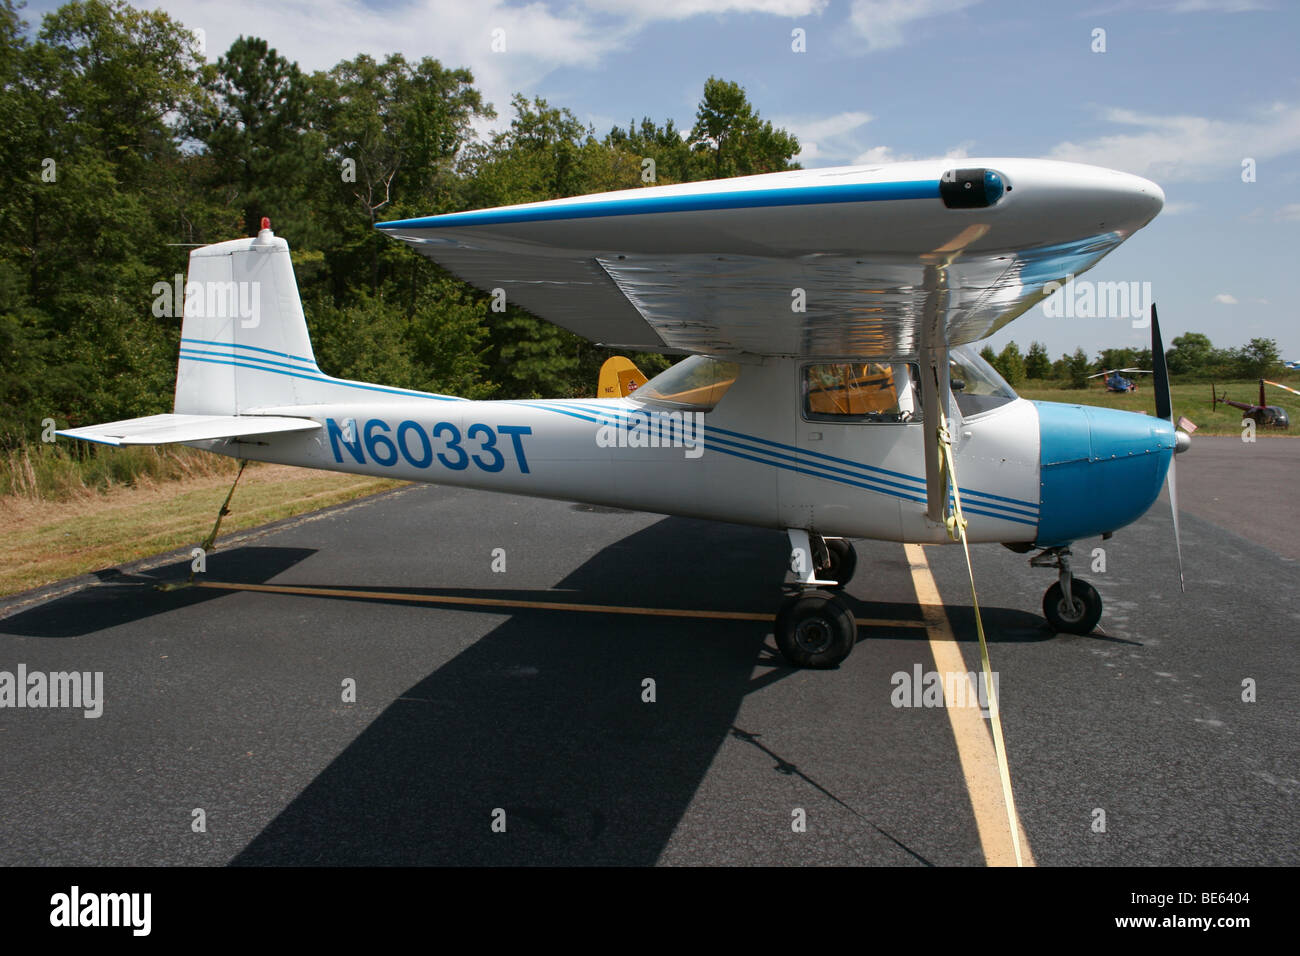 Vista lateral de un avión pequeño mostrando la forma aerodinámica de las alas. Foto de stock